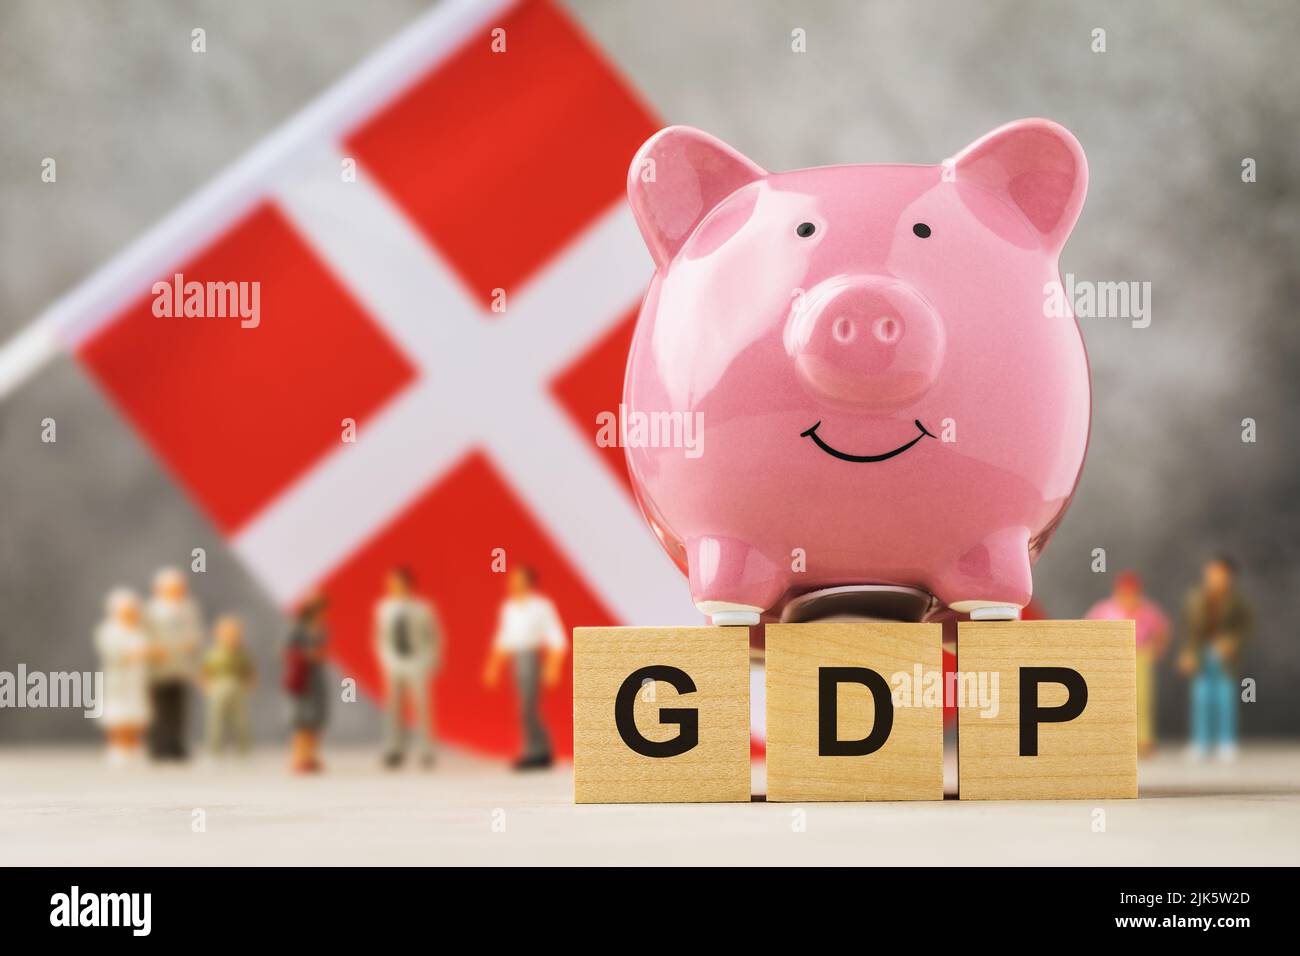 Banco de cerdos, cubos de madera con texto, juguetes hechos de plástico y una bandera sobre un fondo abstracto, un concepto sobre el tema del PIB sueco Foto de stock